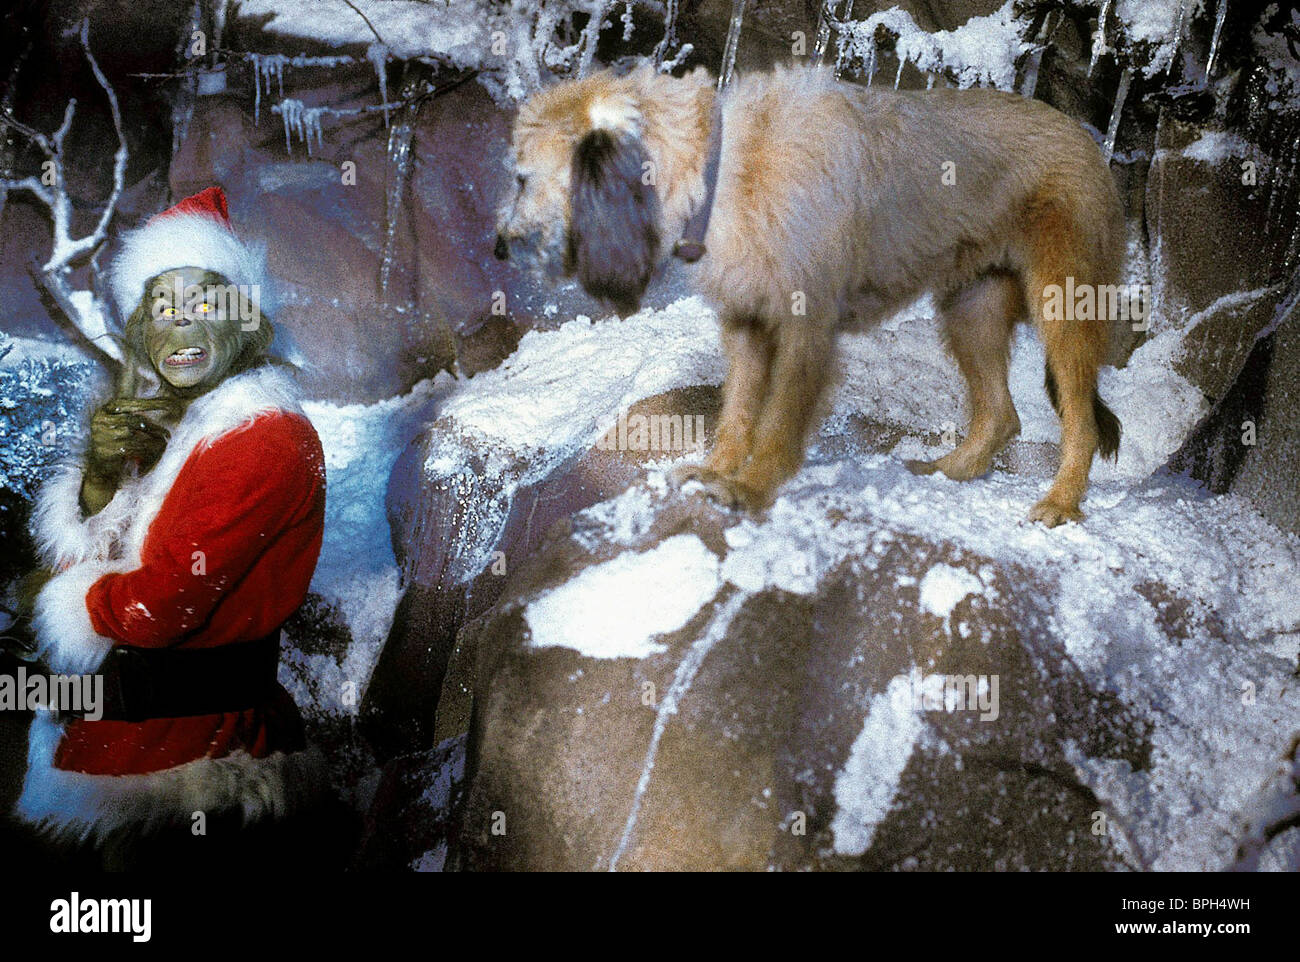 JIM CARREY, MAX DER HUND, Wie der Grinch Weihnachten gestohlen hat, 2000  Stockfotografie - Alamy